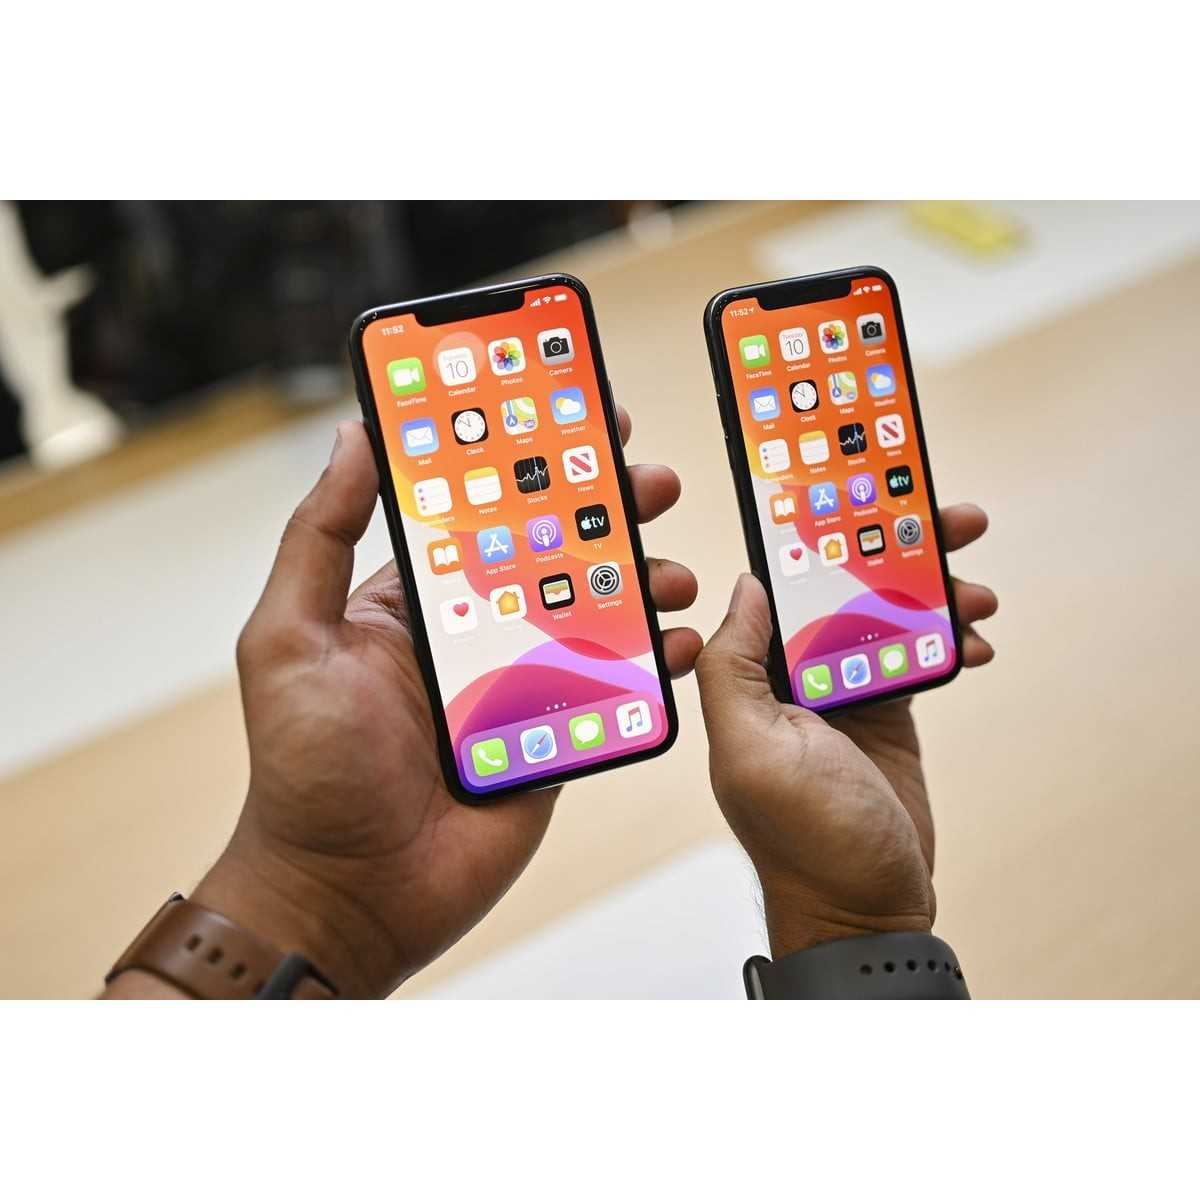 Мобильный телефон Apple iPhone X - подробные характеристики обзоры видео фото Цены в интернет-магазинах где можно купить мобильный телефон Apple iPhone X